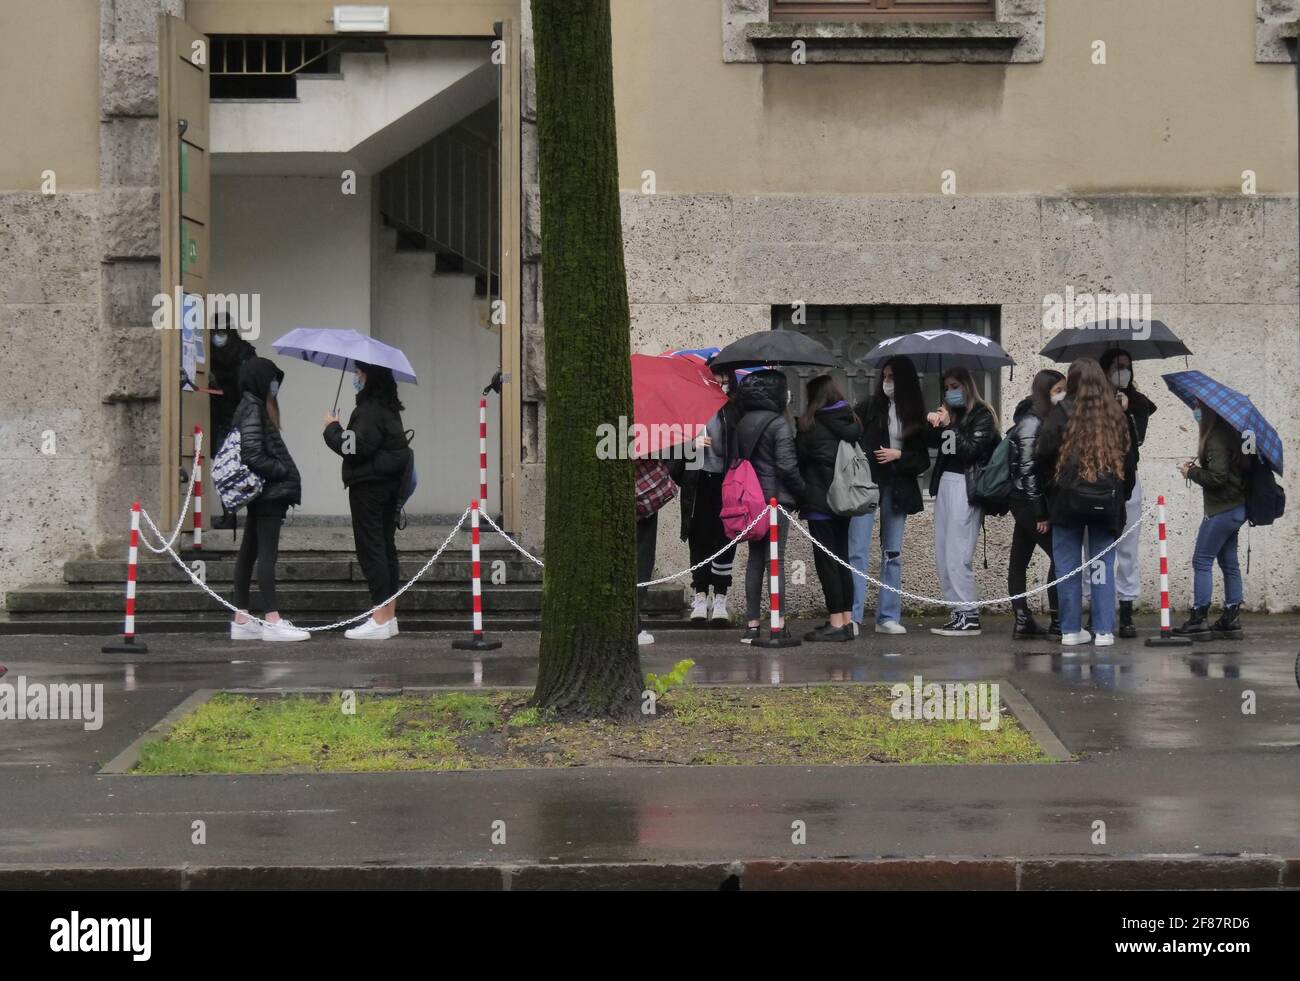 Dopo molti mesi riaprono le maggiori scuole italiane, il primo giorno di riapertura della scuola a Bergamo. Foto Stock